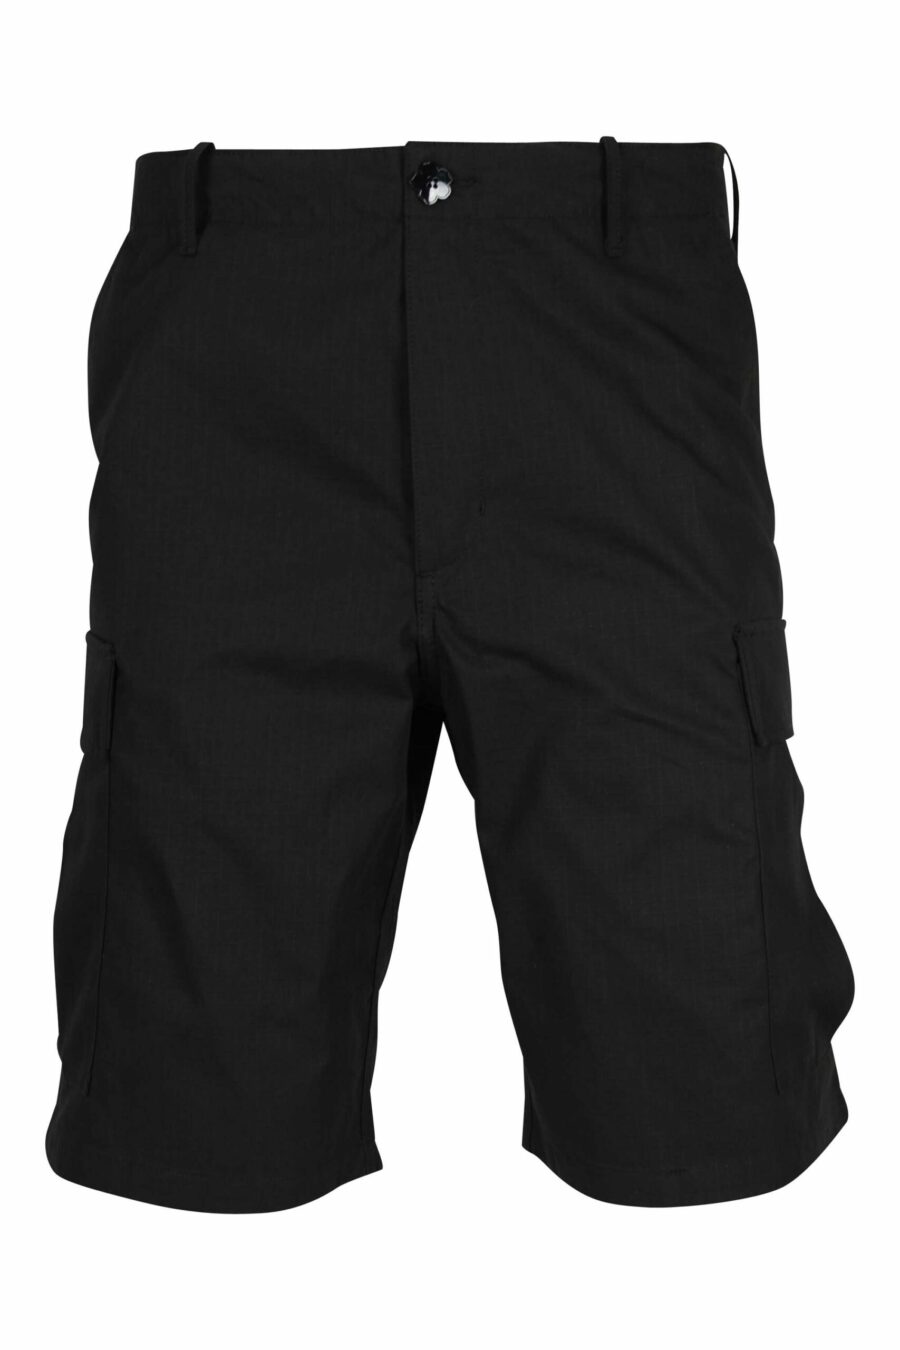 Pantalón negro corto estilo cargo con logo "boke flower" - 3612230618985 scaled